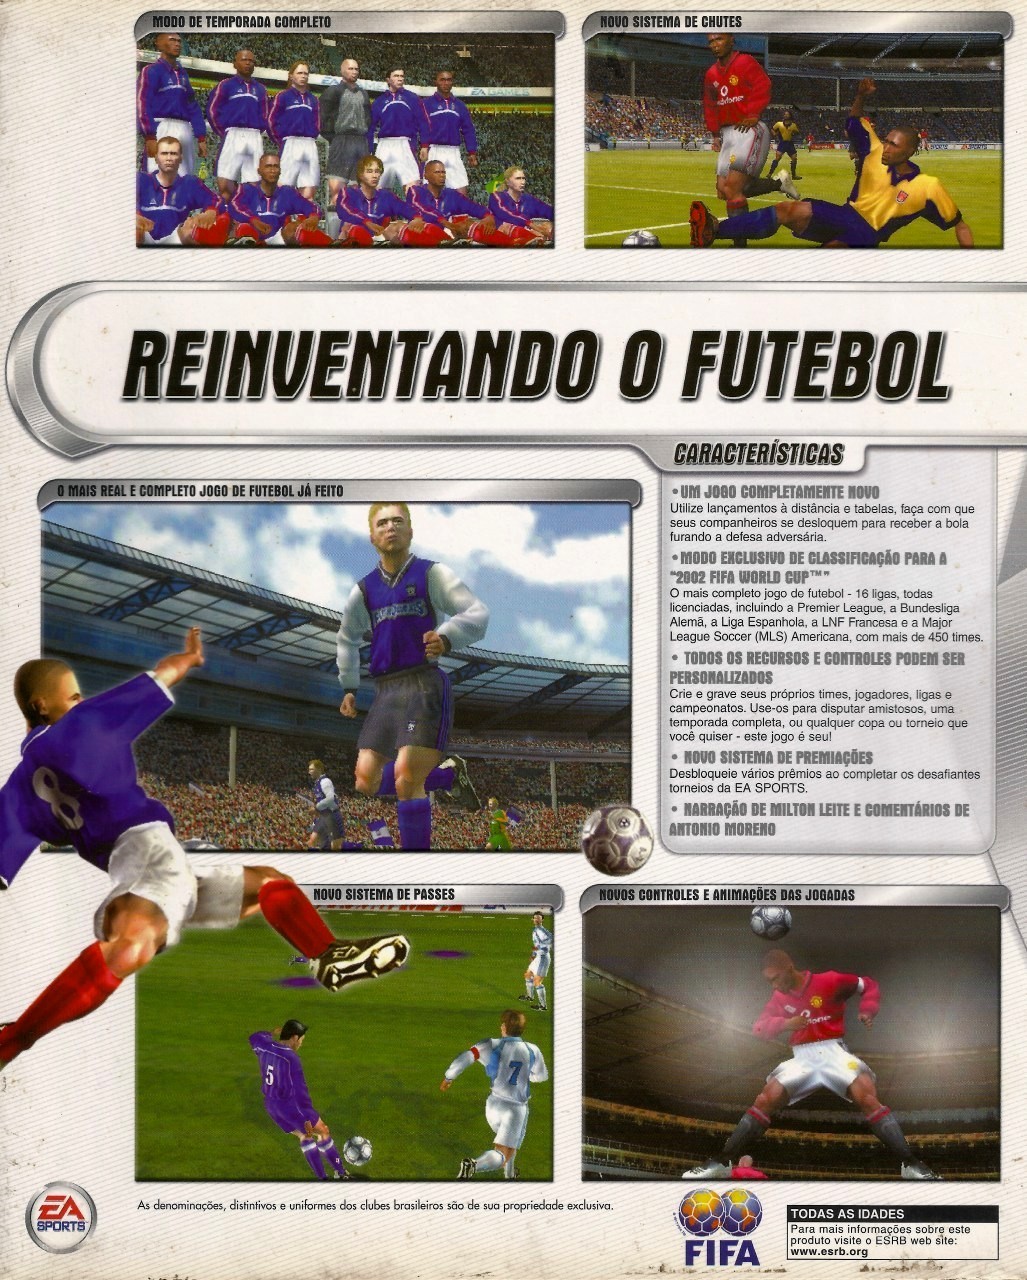 Capa do jogo FIFA Football 2002